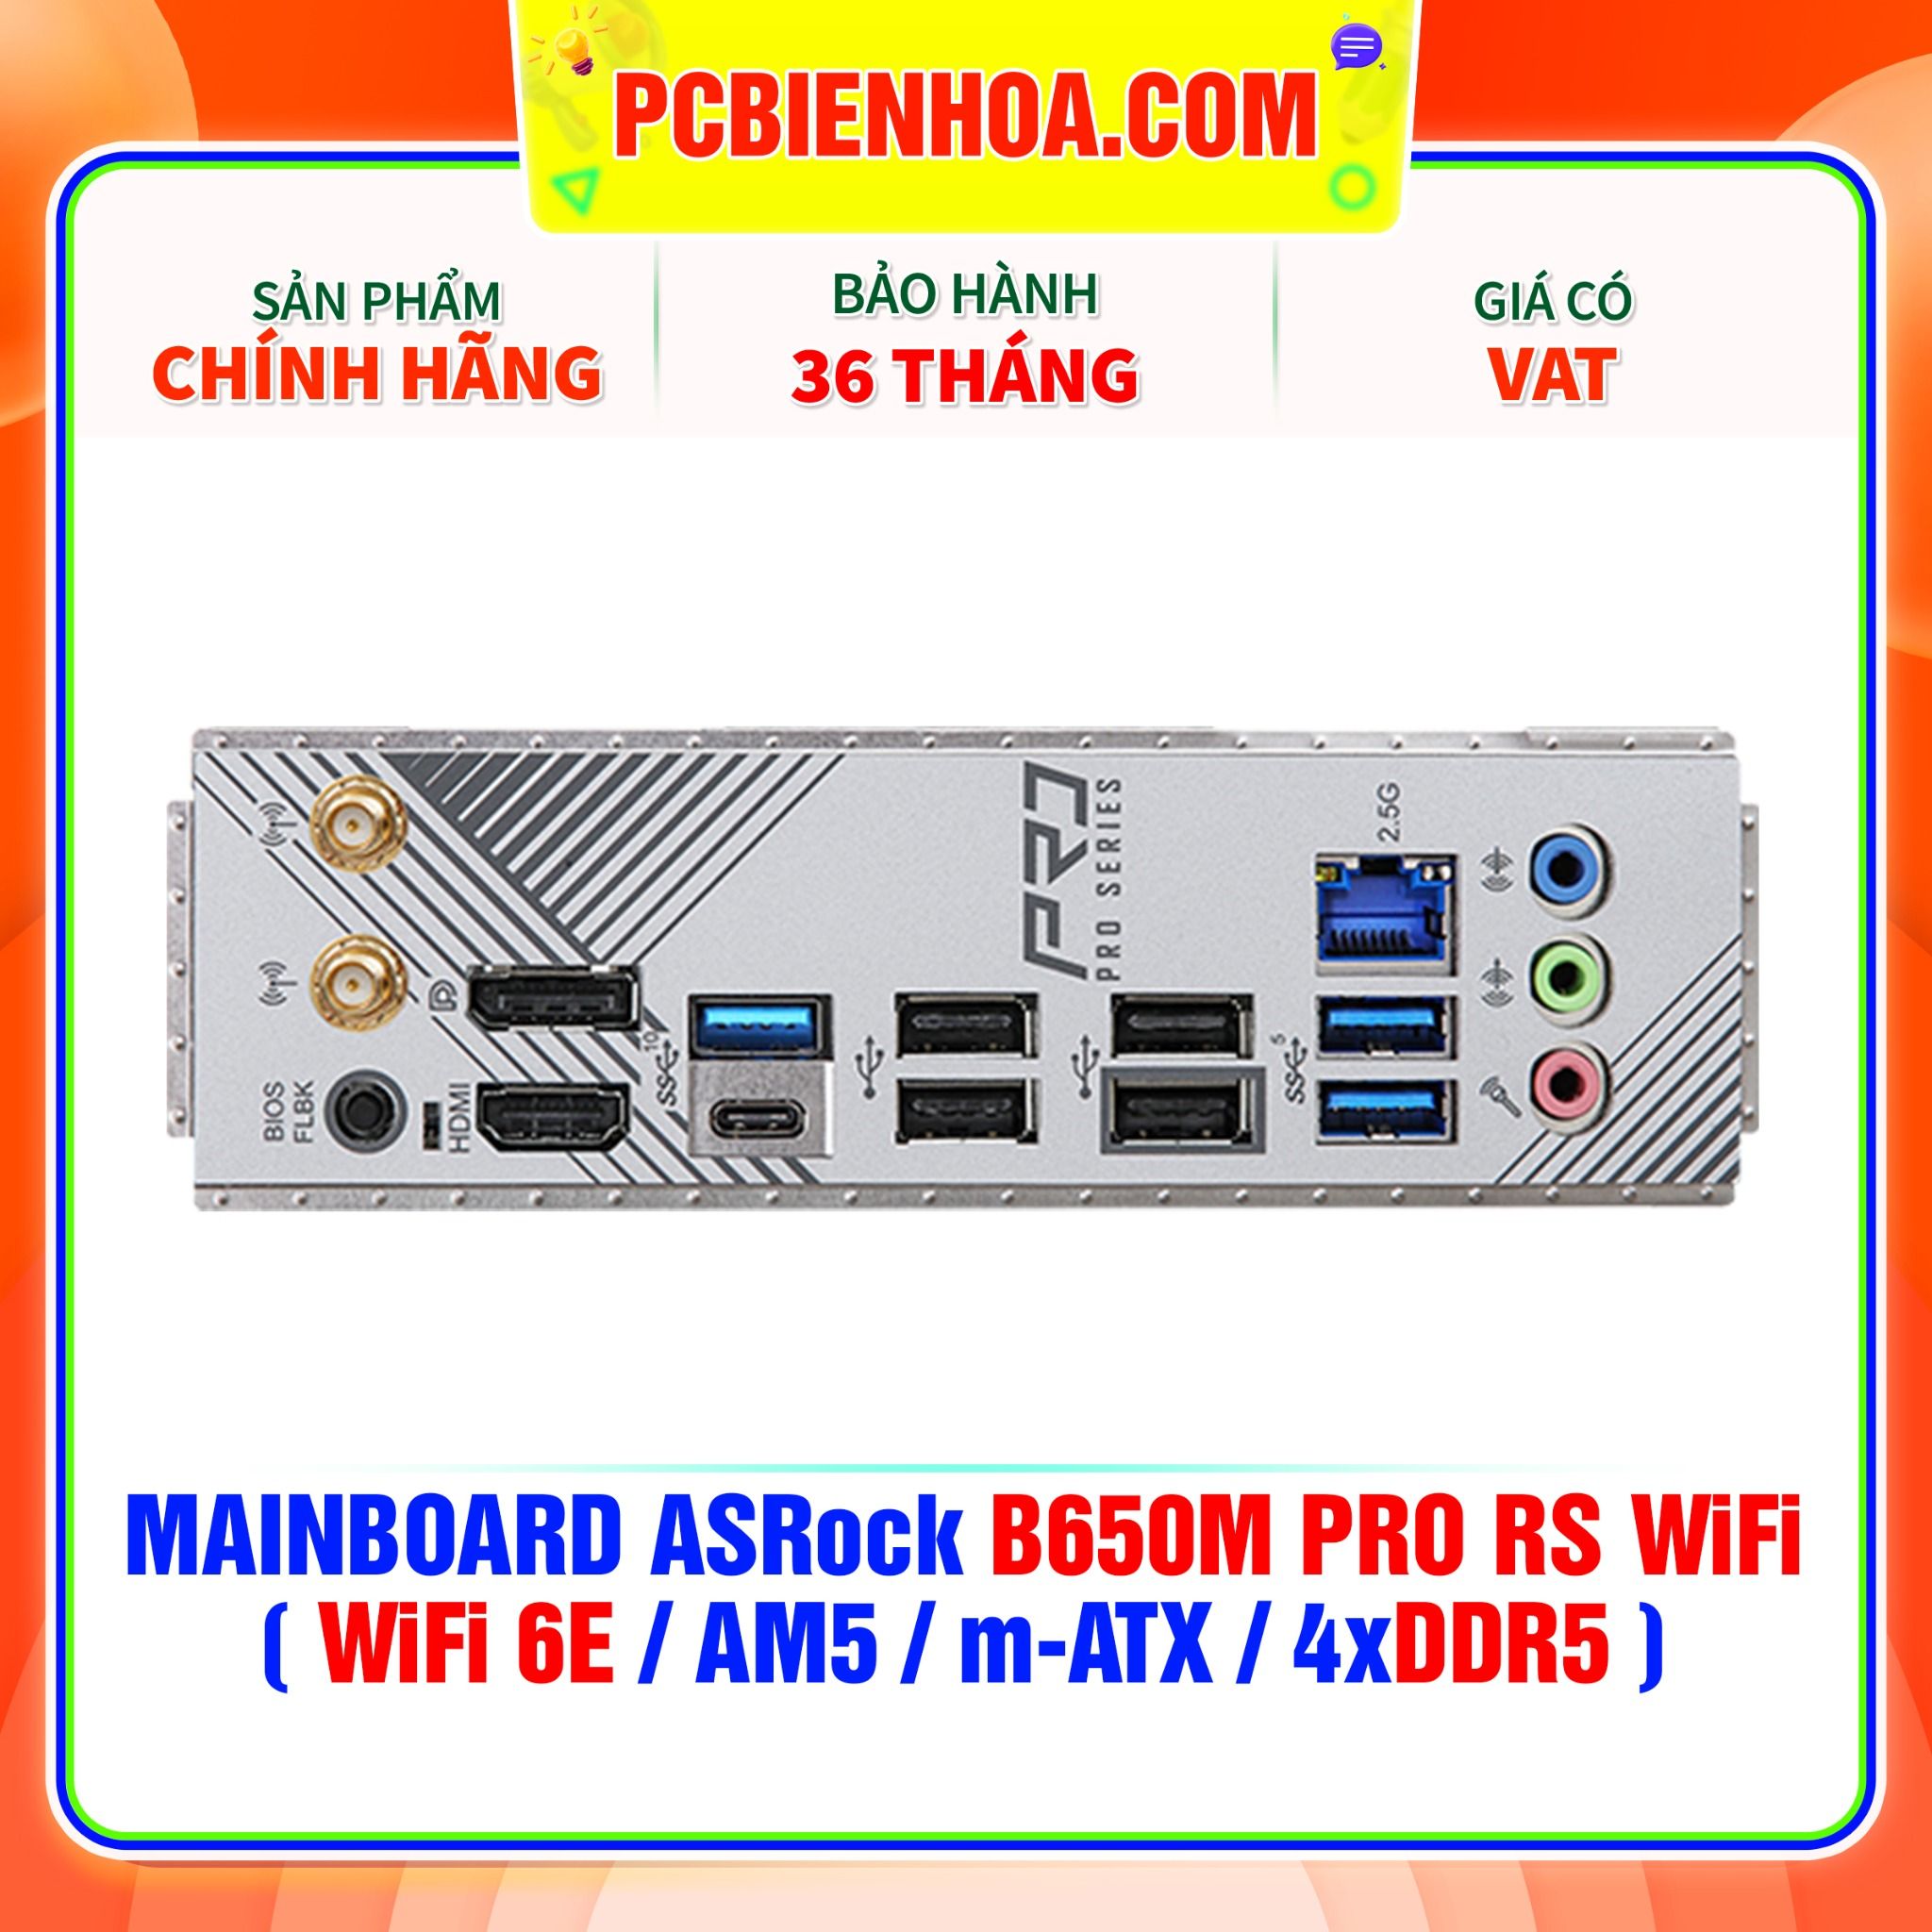  DDR5 - MAINBOARD ASRock B650M PRO RS WiFi ( WiFi 6E / AM5 / m-ATX / 4xDDR5 ) 